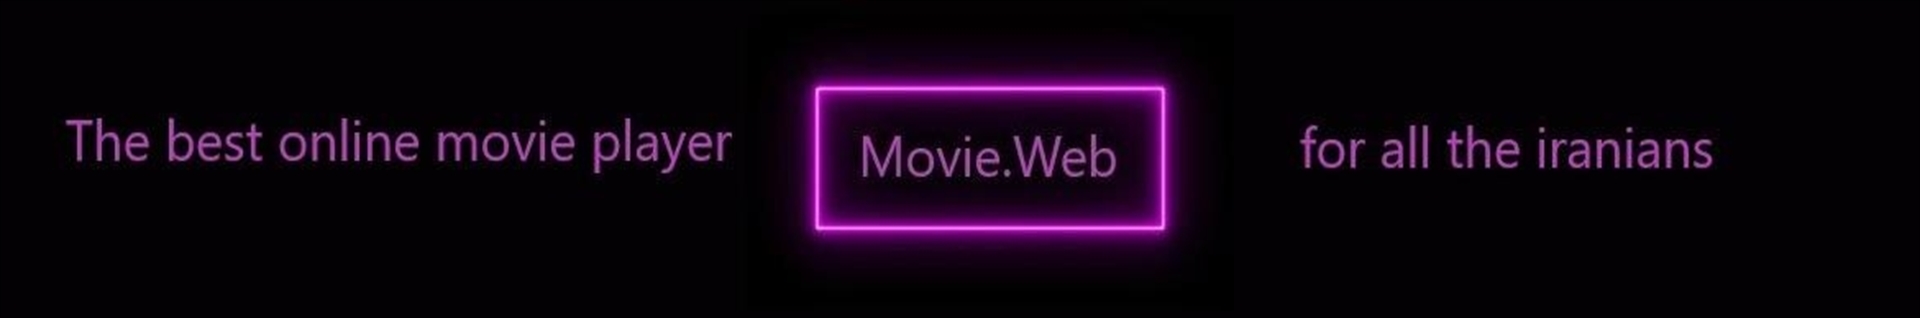 Movie.Web